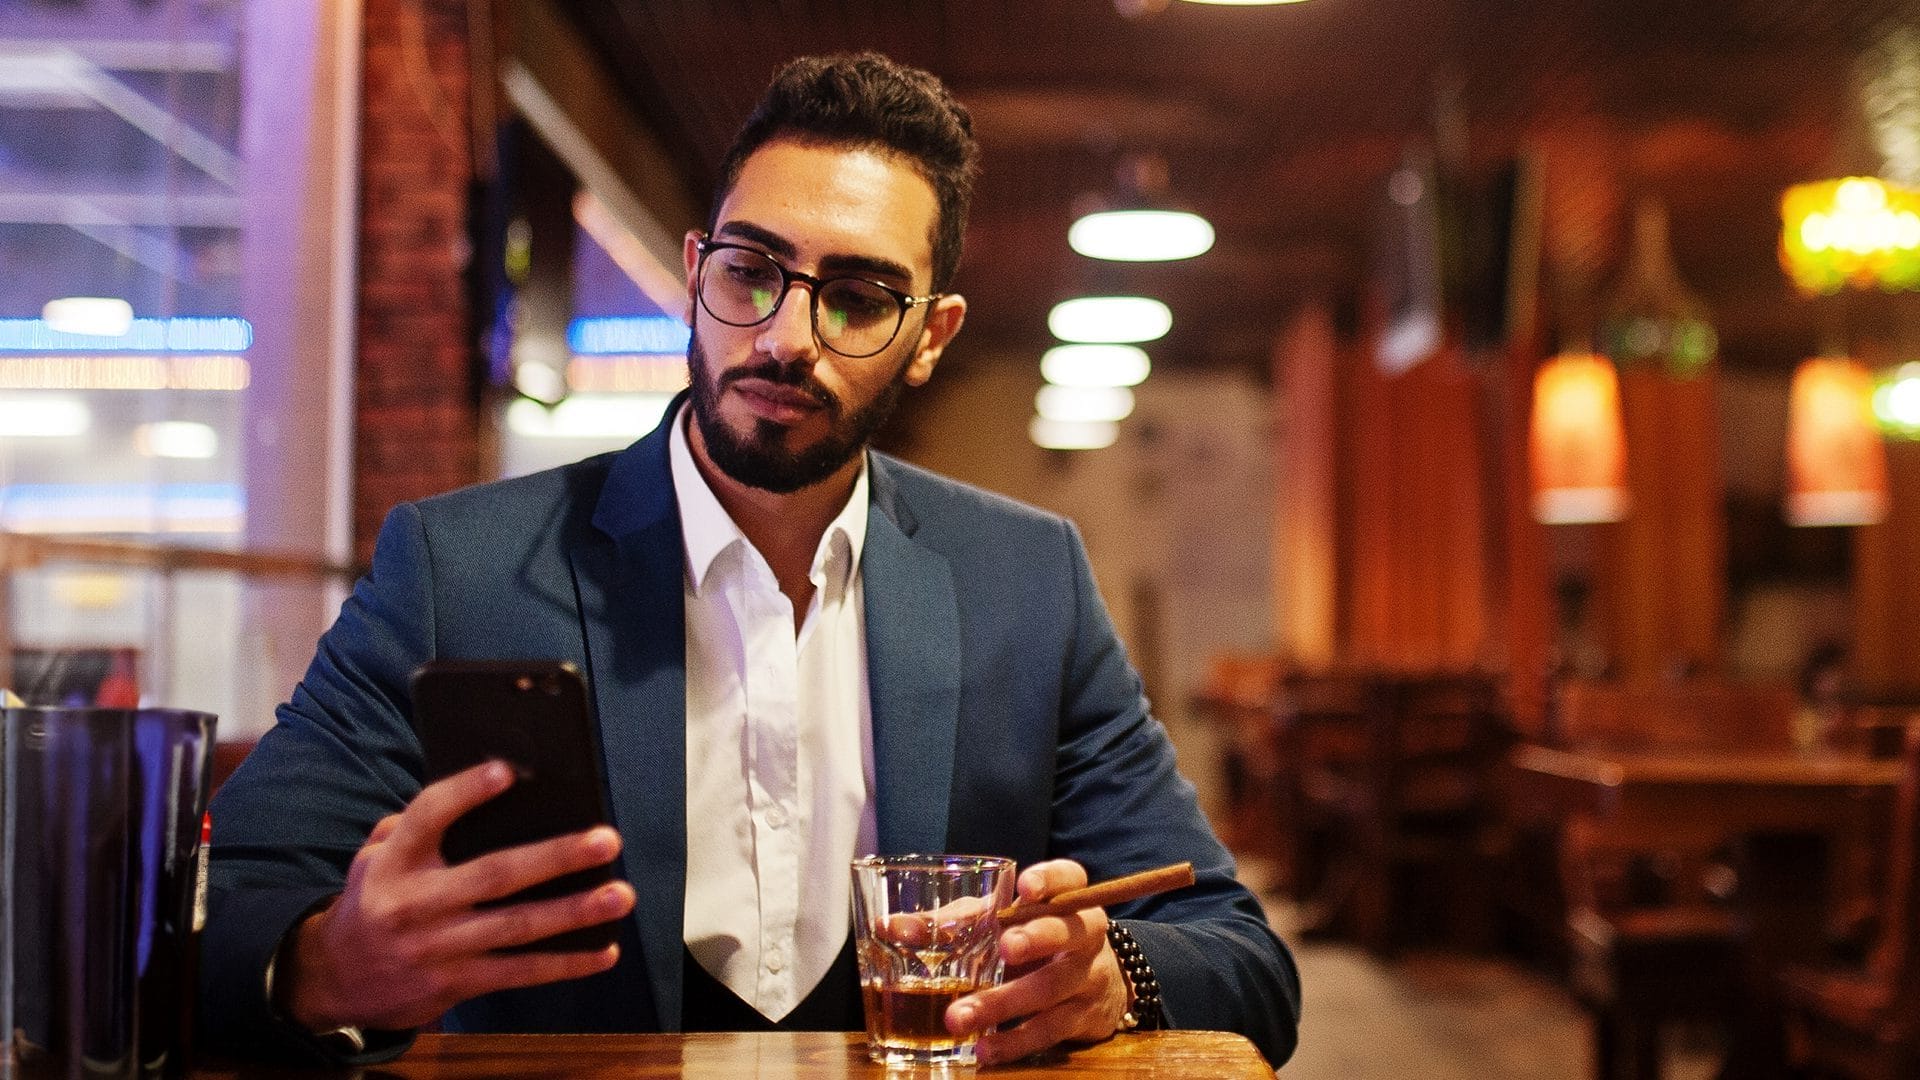 Homme assis à un restaurant, un cigare dans une main et un téléphone portable dans une autre main